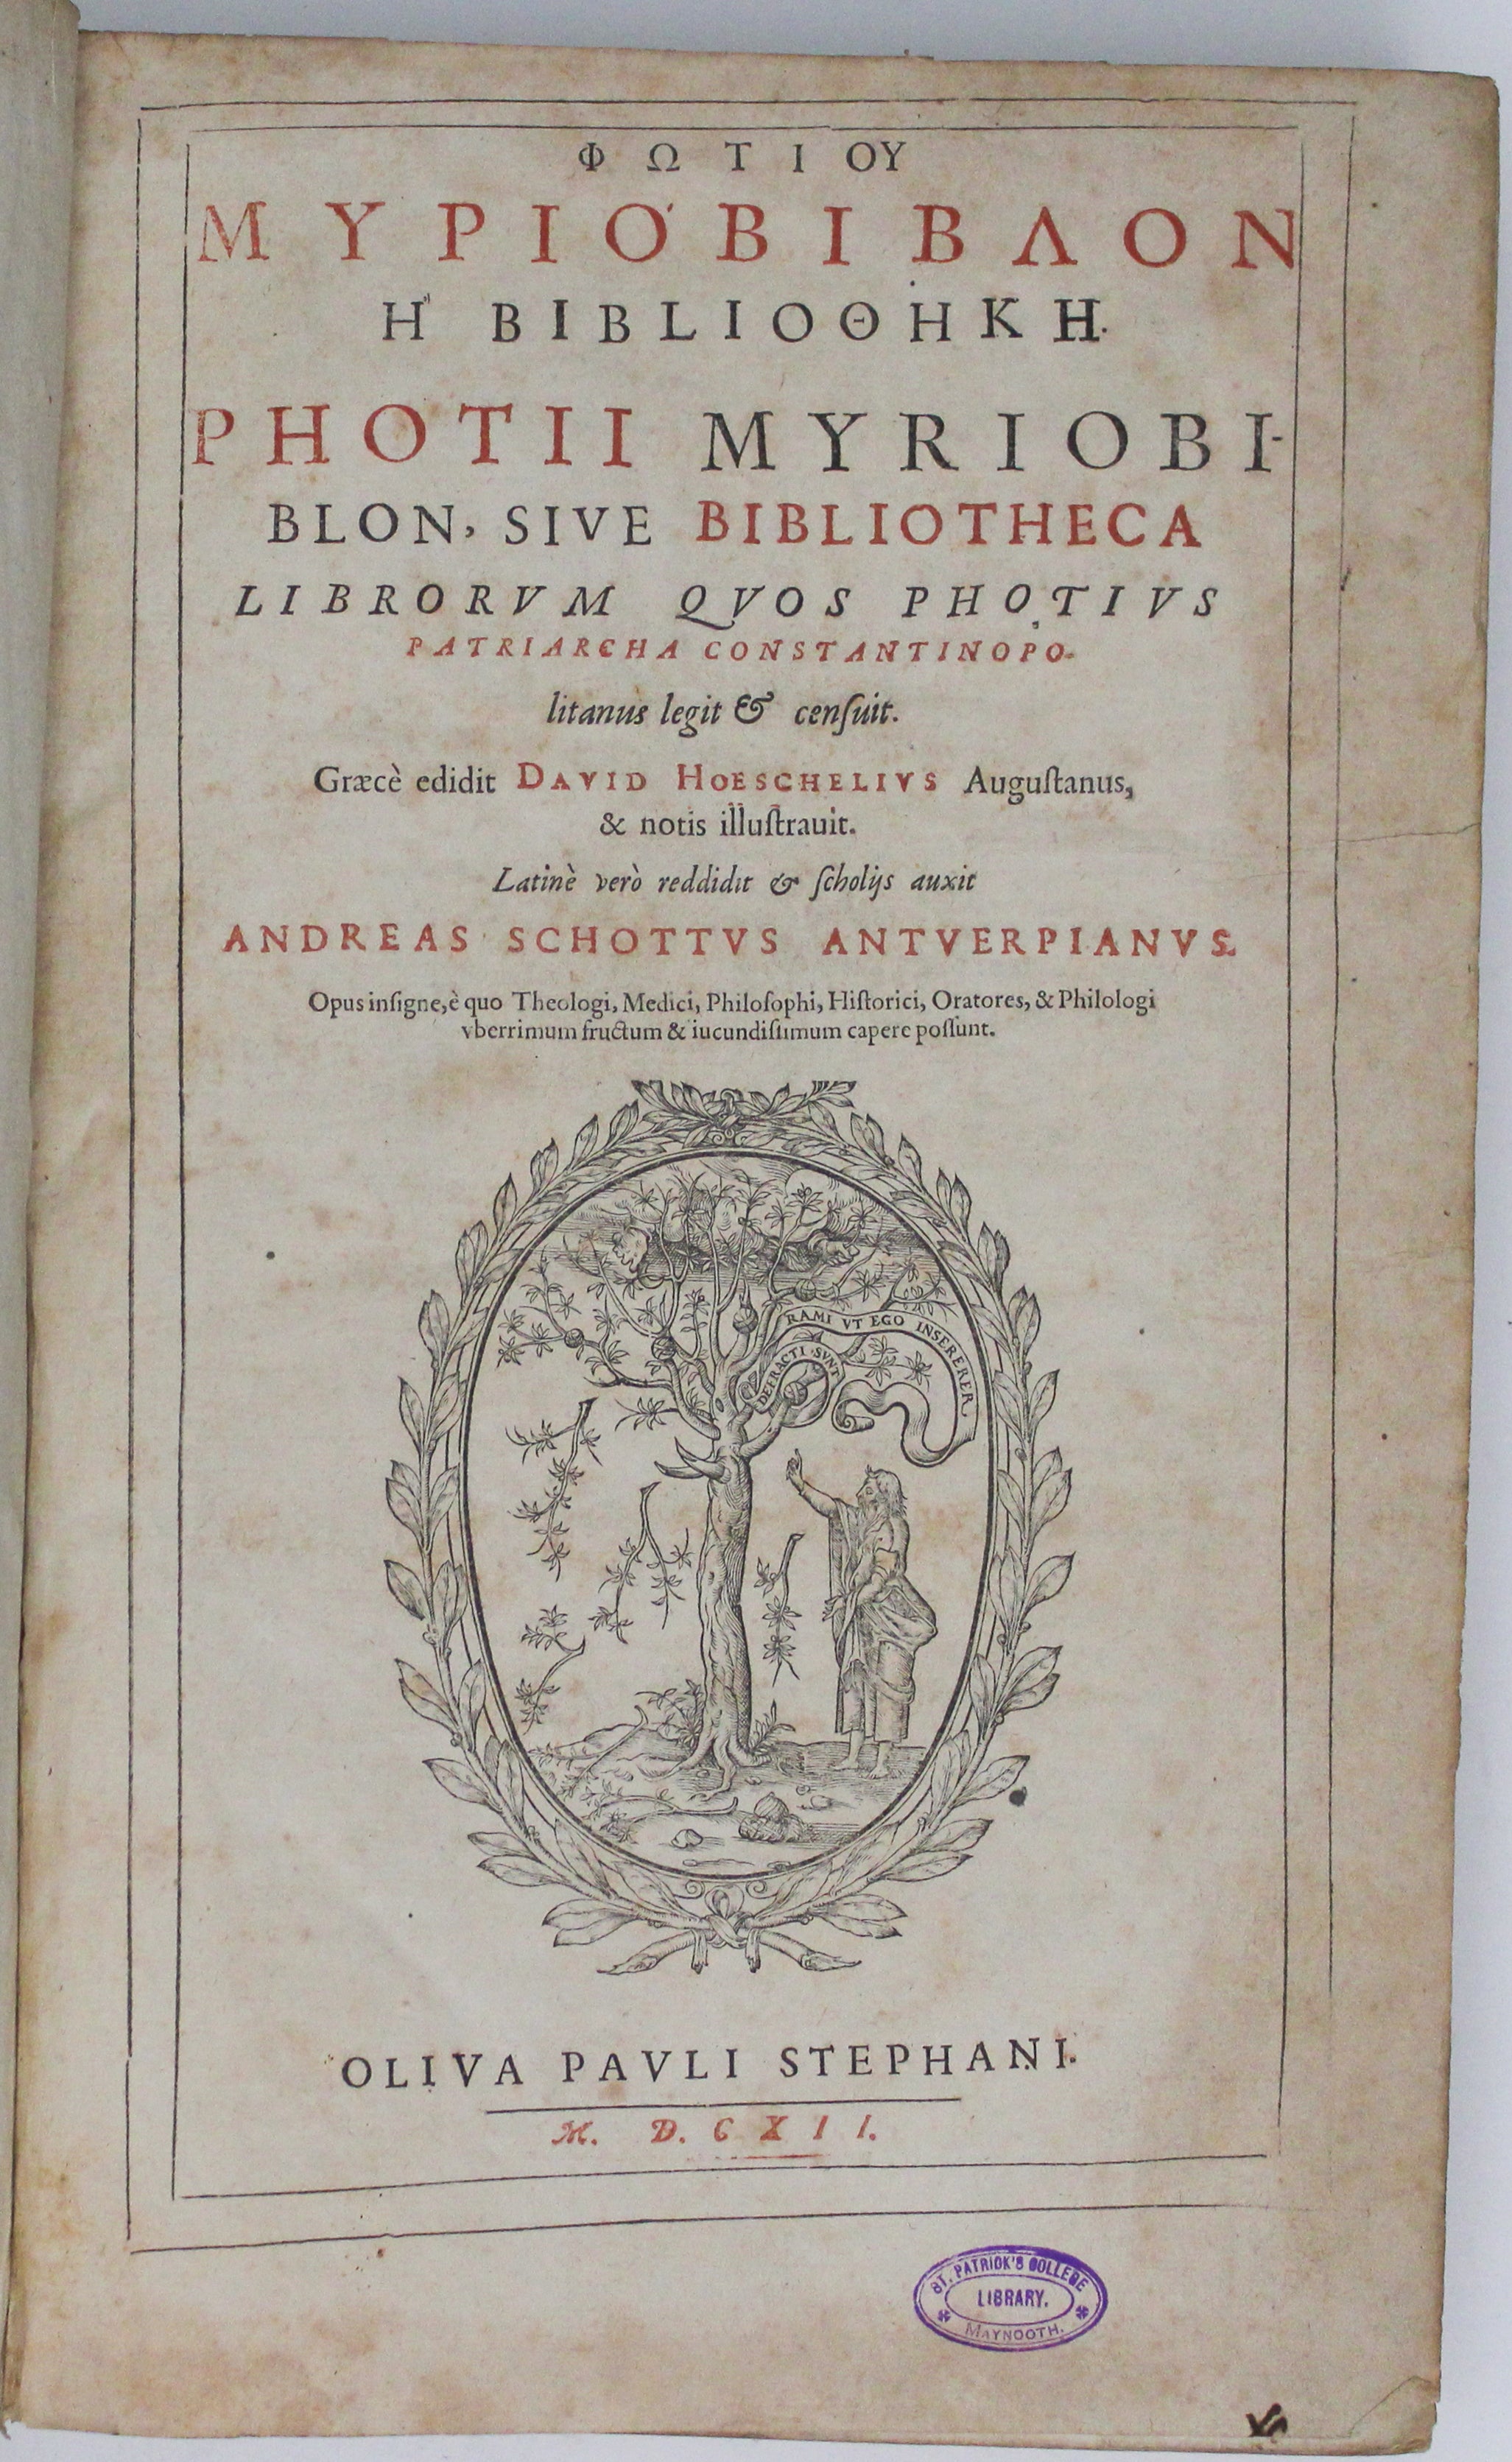 First Bilingual Edition of Photios' Myriobiblon